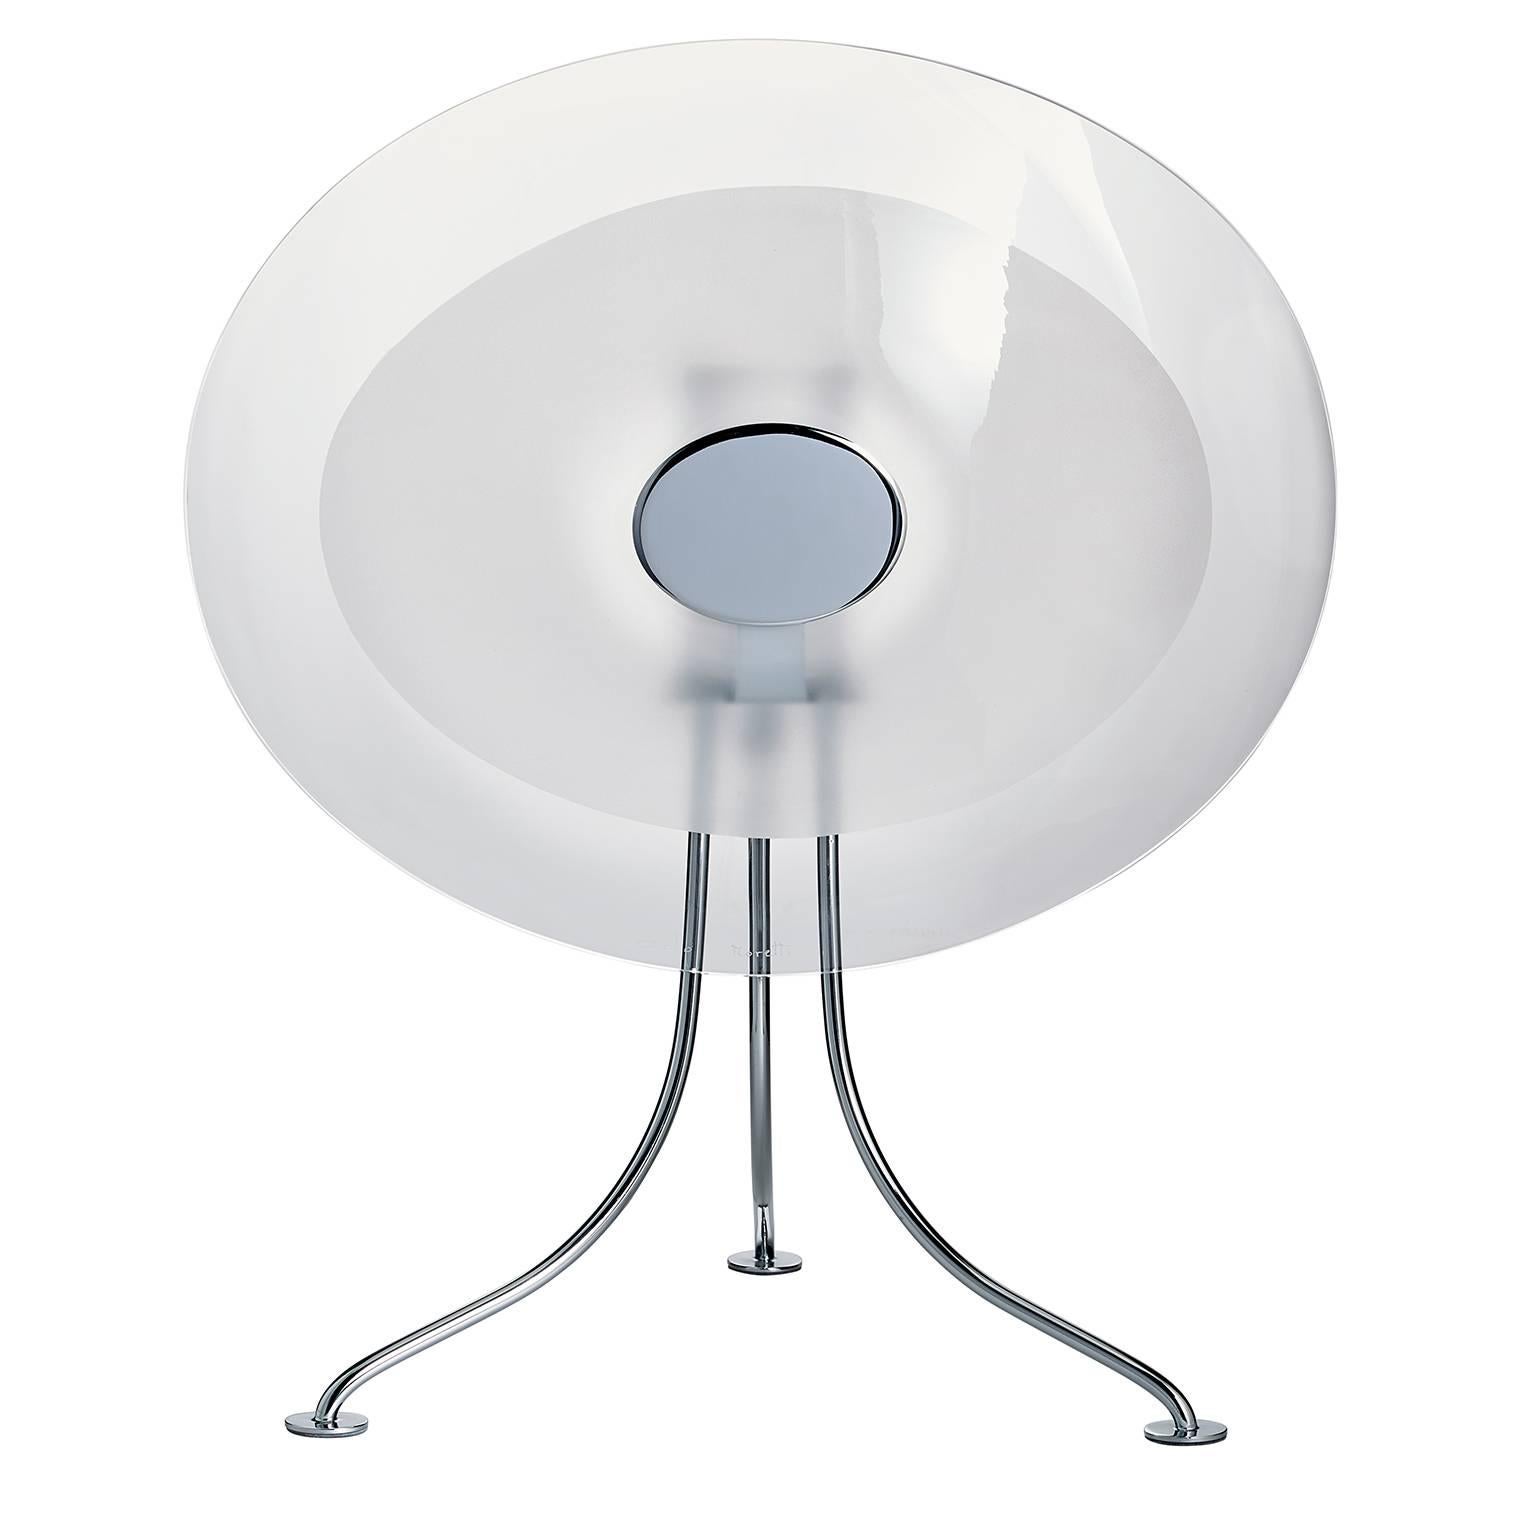 Scudo Carlo Moretti Contemporary Murano Clear Glass Desk or Table Lamp For Sale